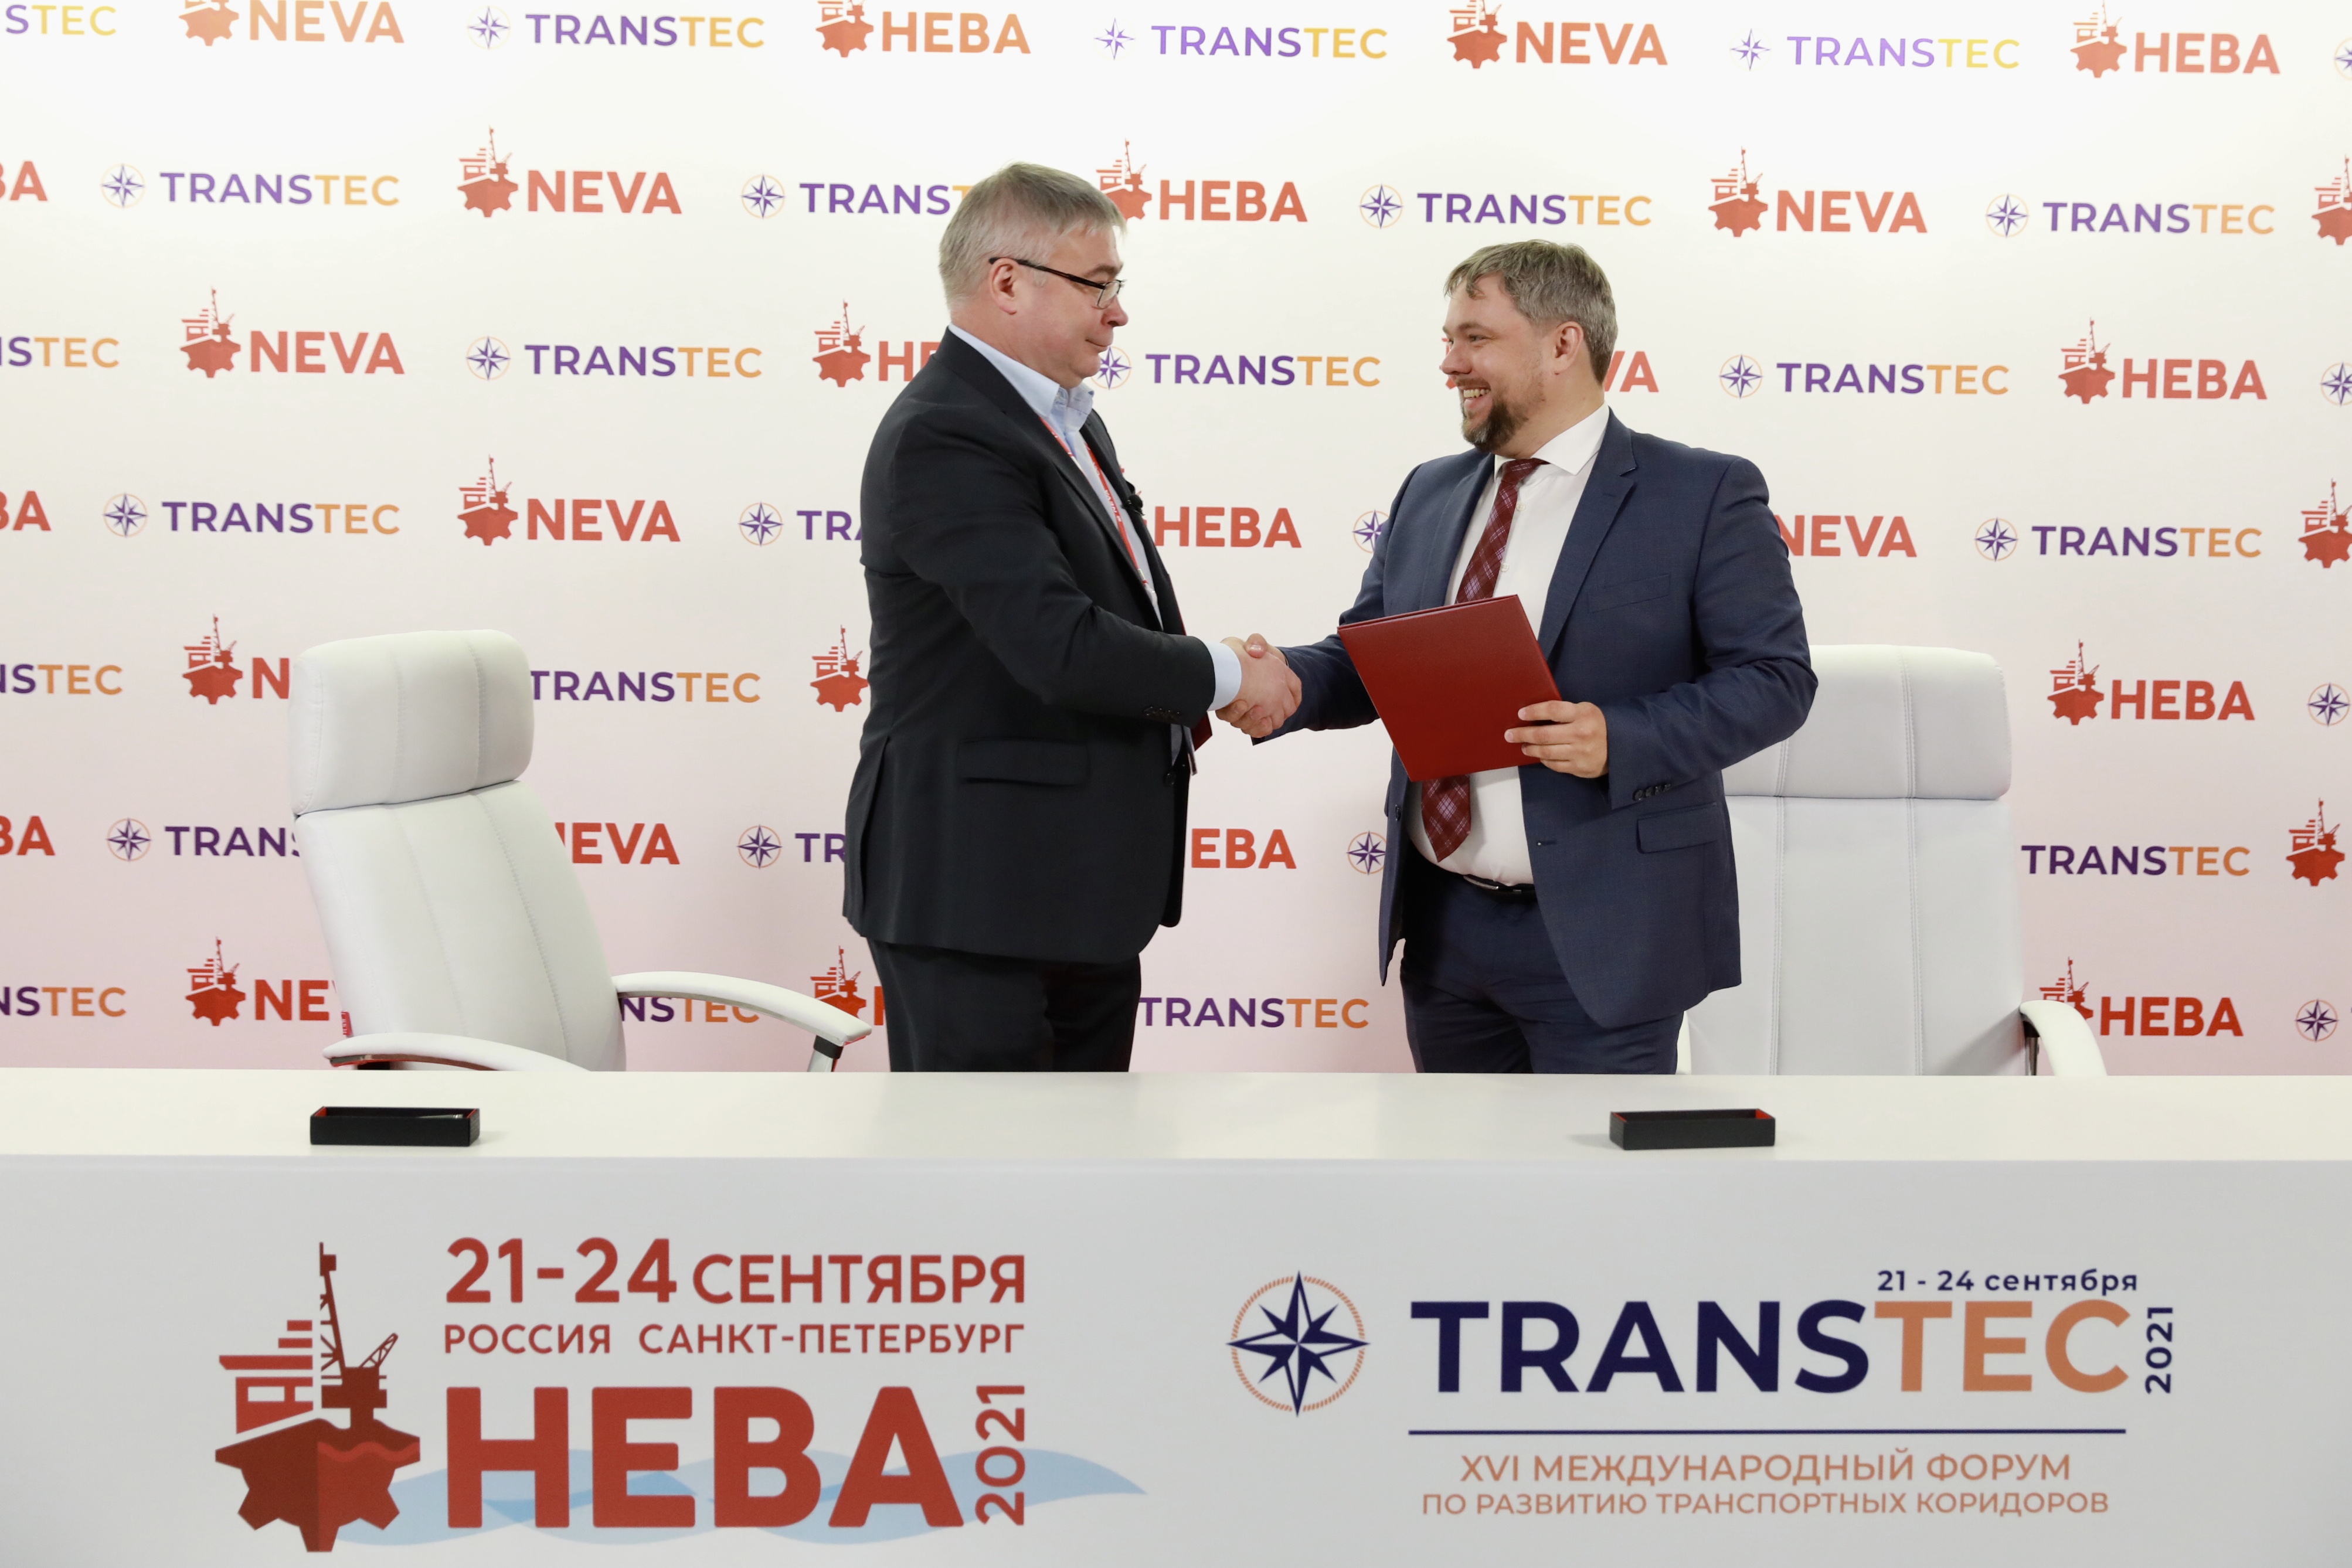 ПОРА и компания-организатор выставки «НЕВА 2021» подписали договор о сотрудничестве